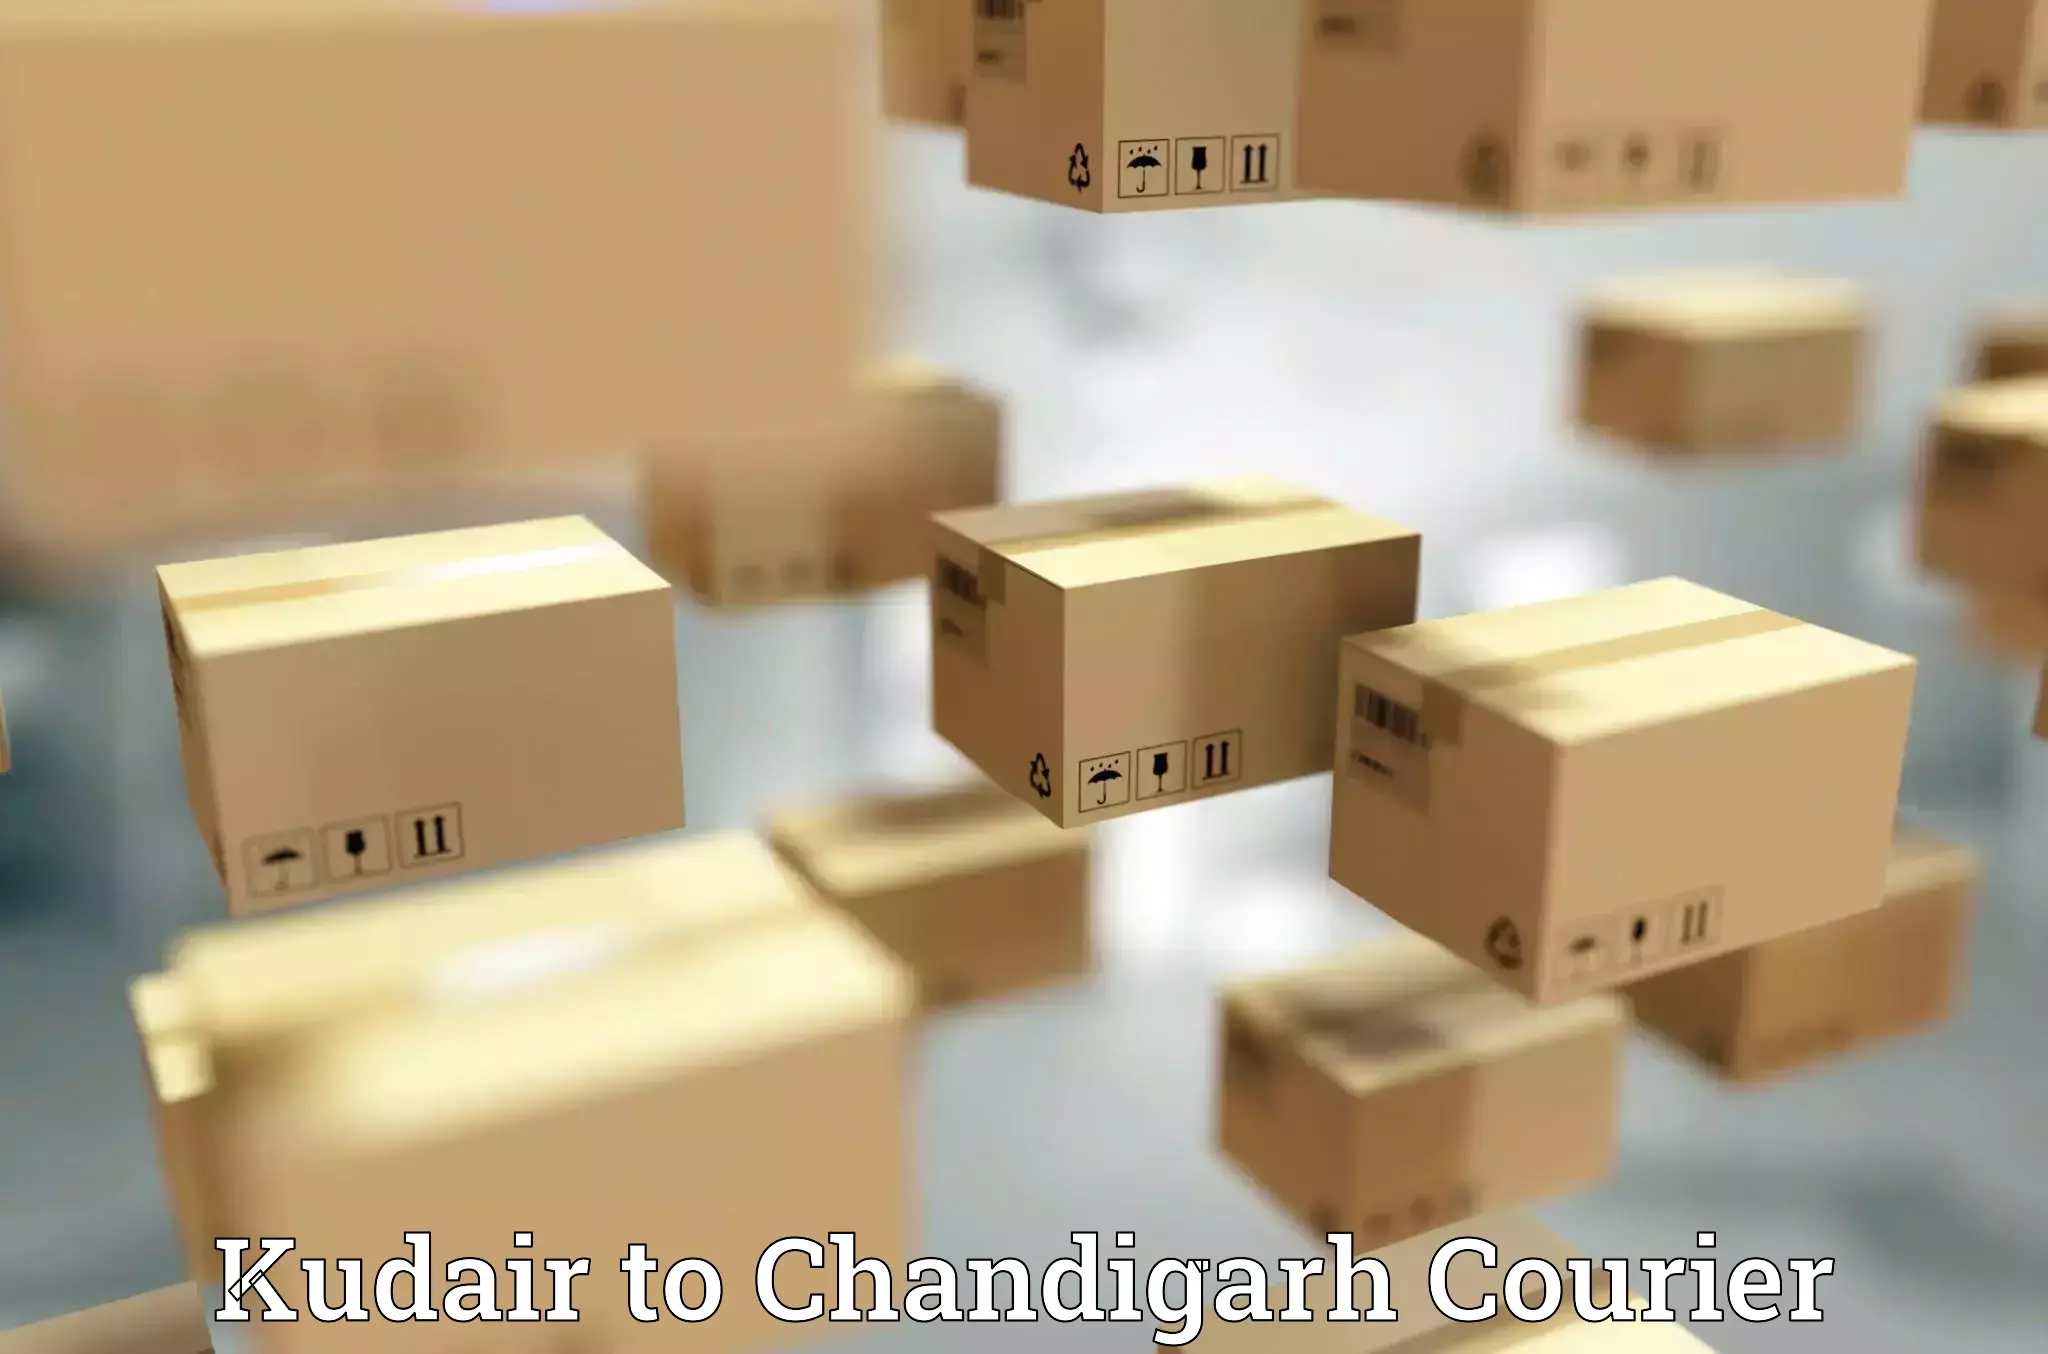 Global logistics network Kudair to Chandigarh